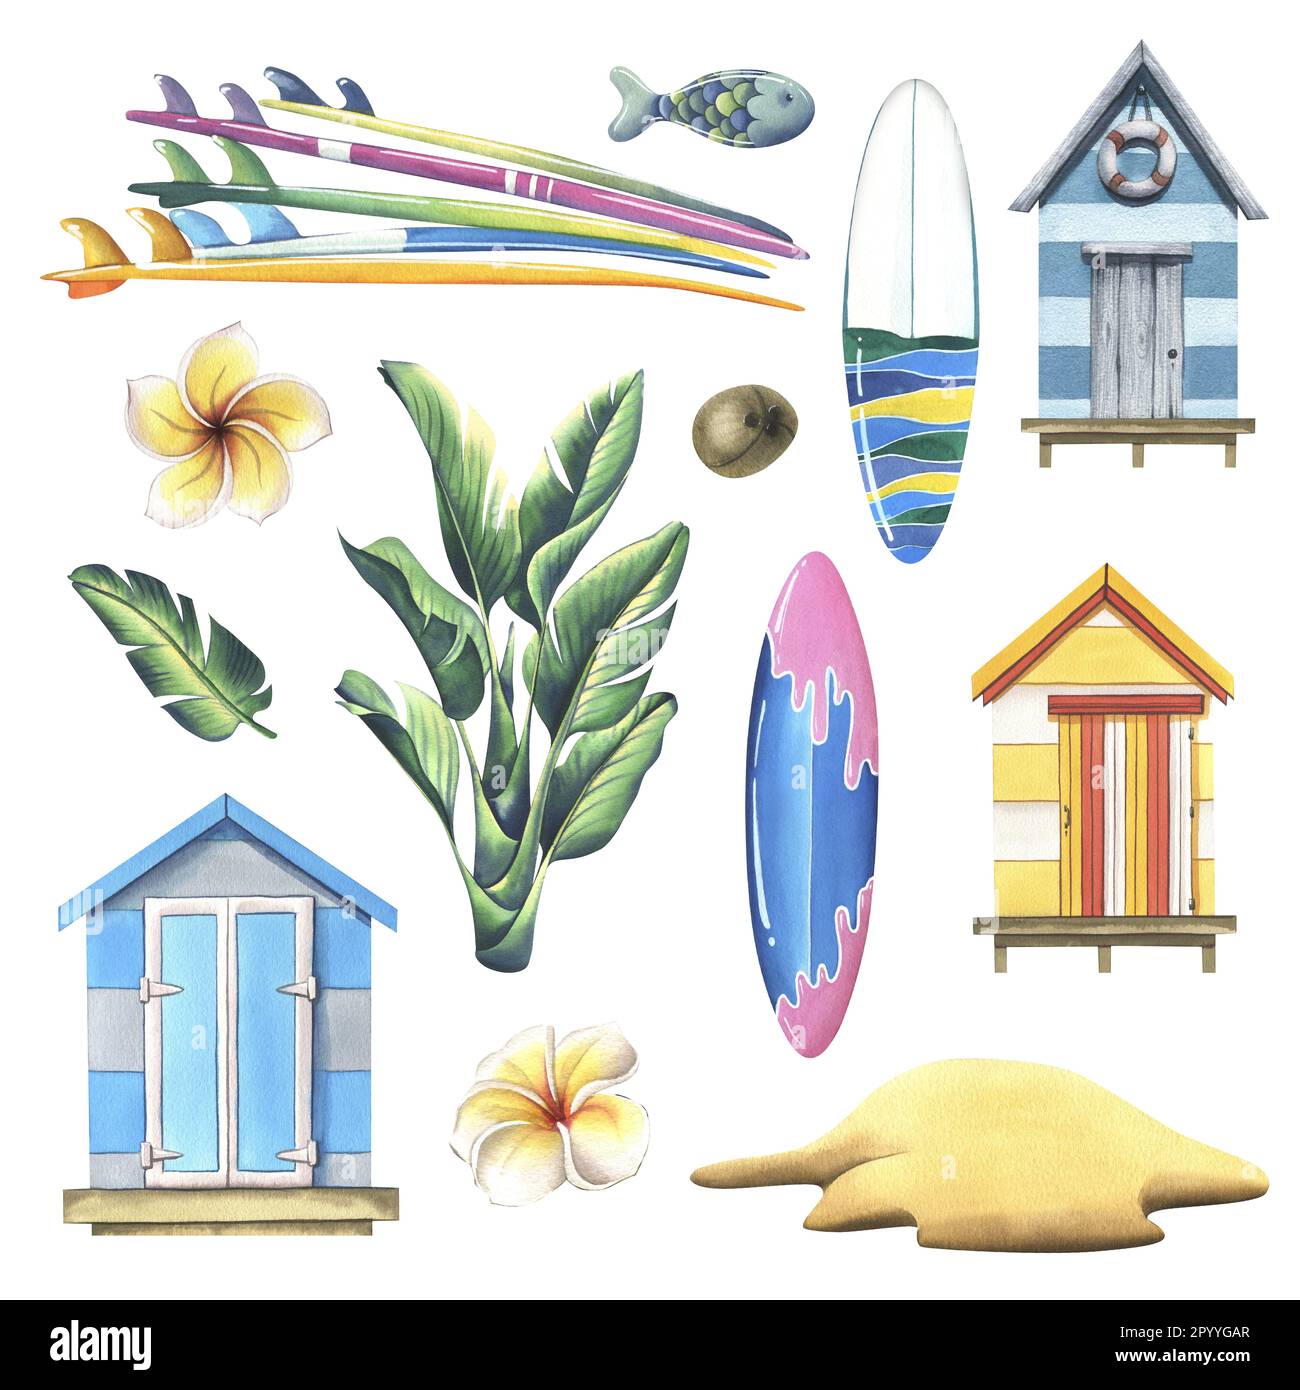 Cabines de plage avec planches de surf, feuilles tropicales et une île sablonneuse. Illustration aquarelle, dessinée à la main. Ensemble d'éléments isolés sur fond blanc. Banque D'Images